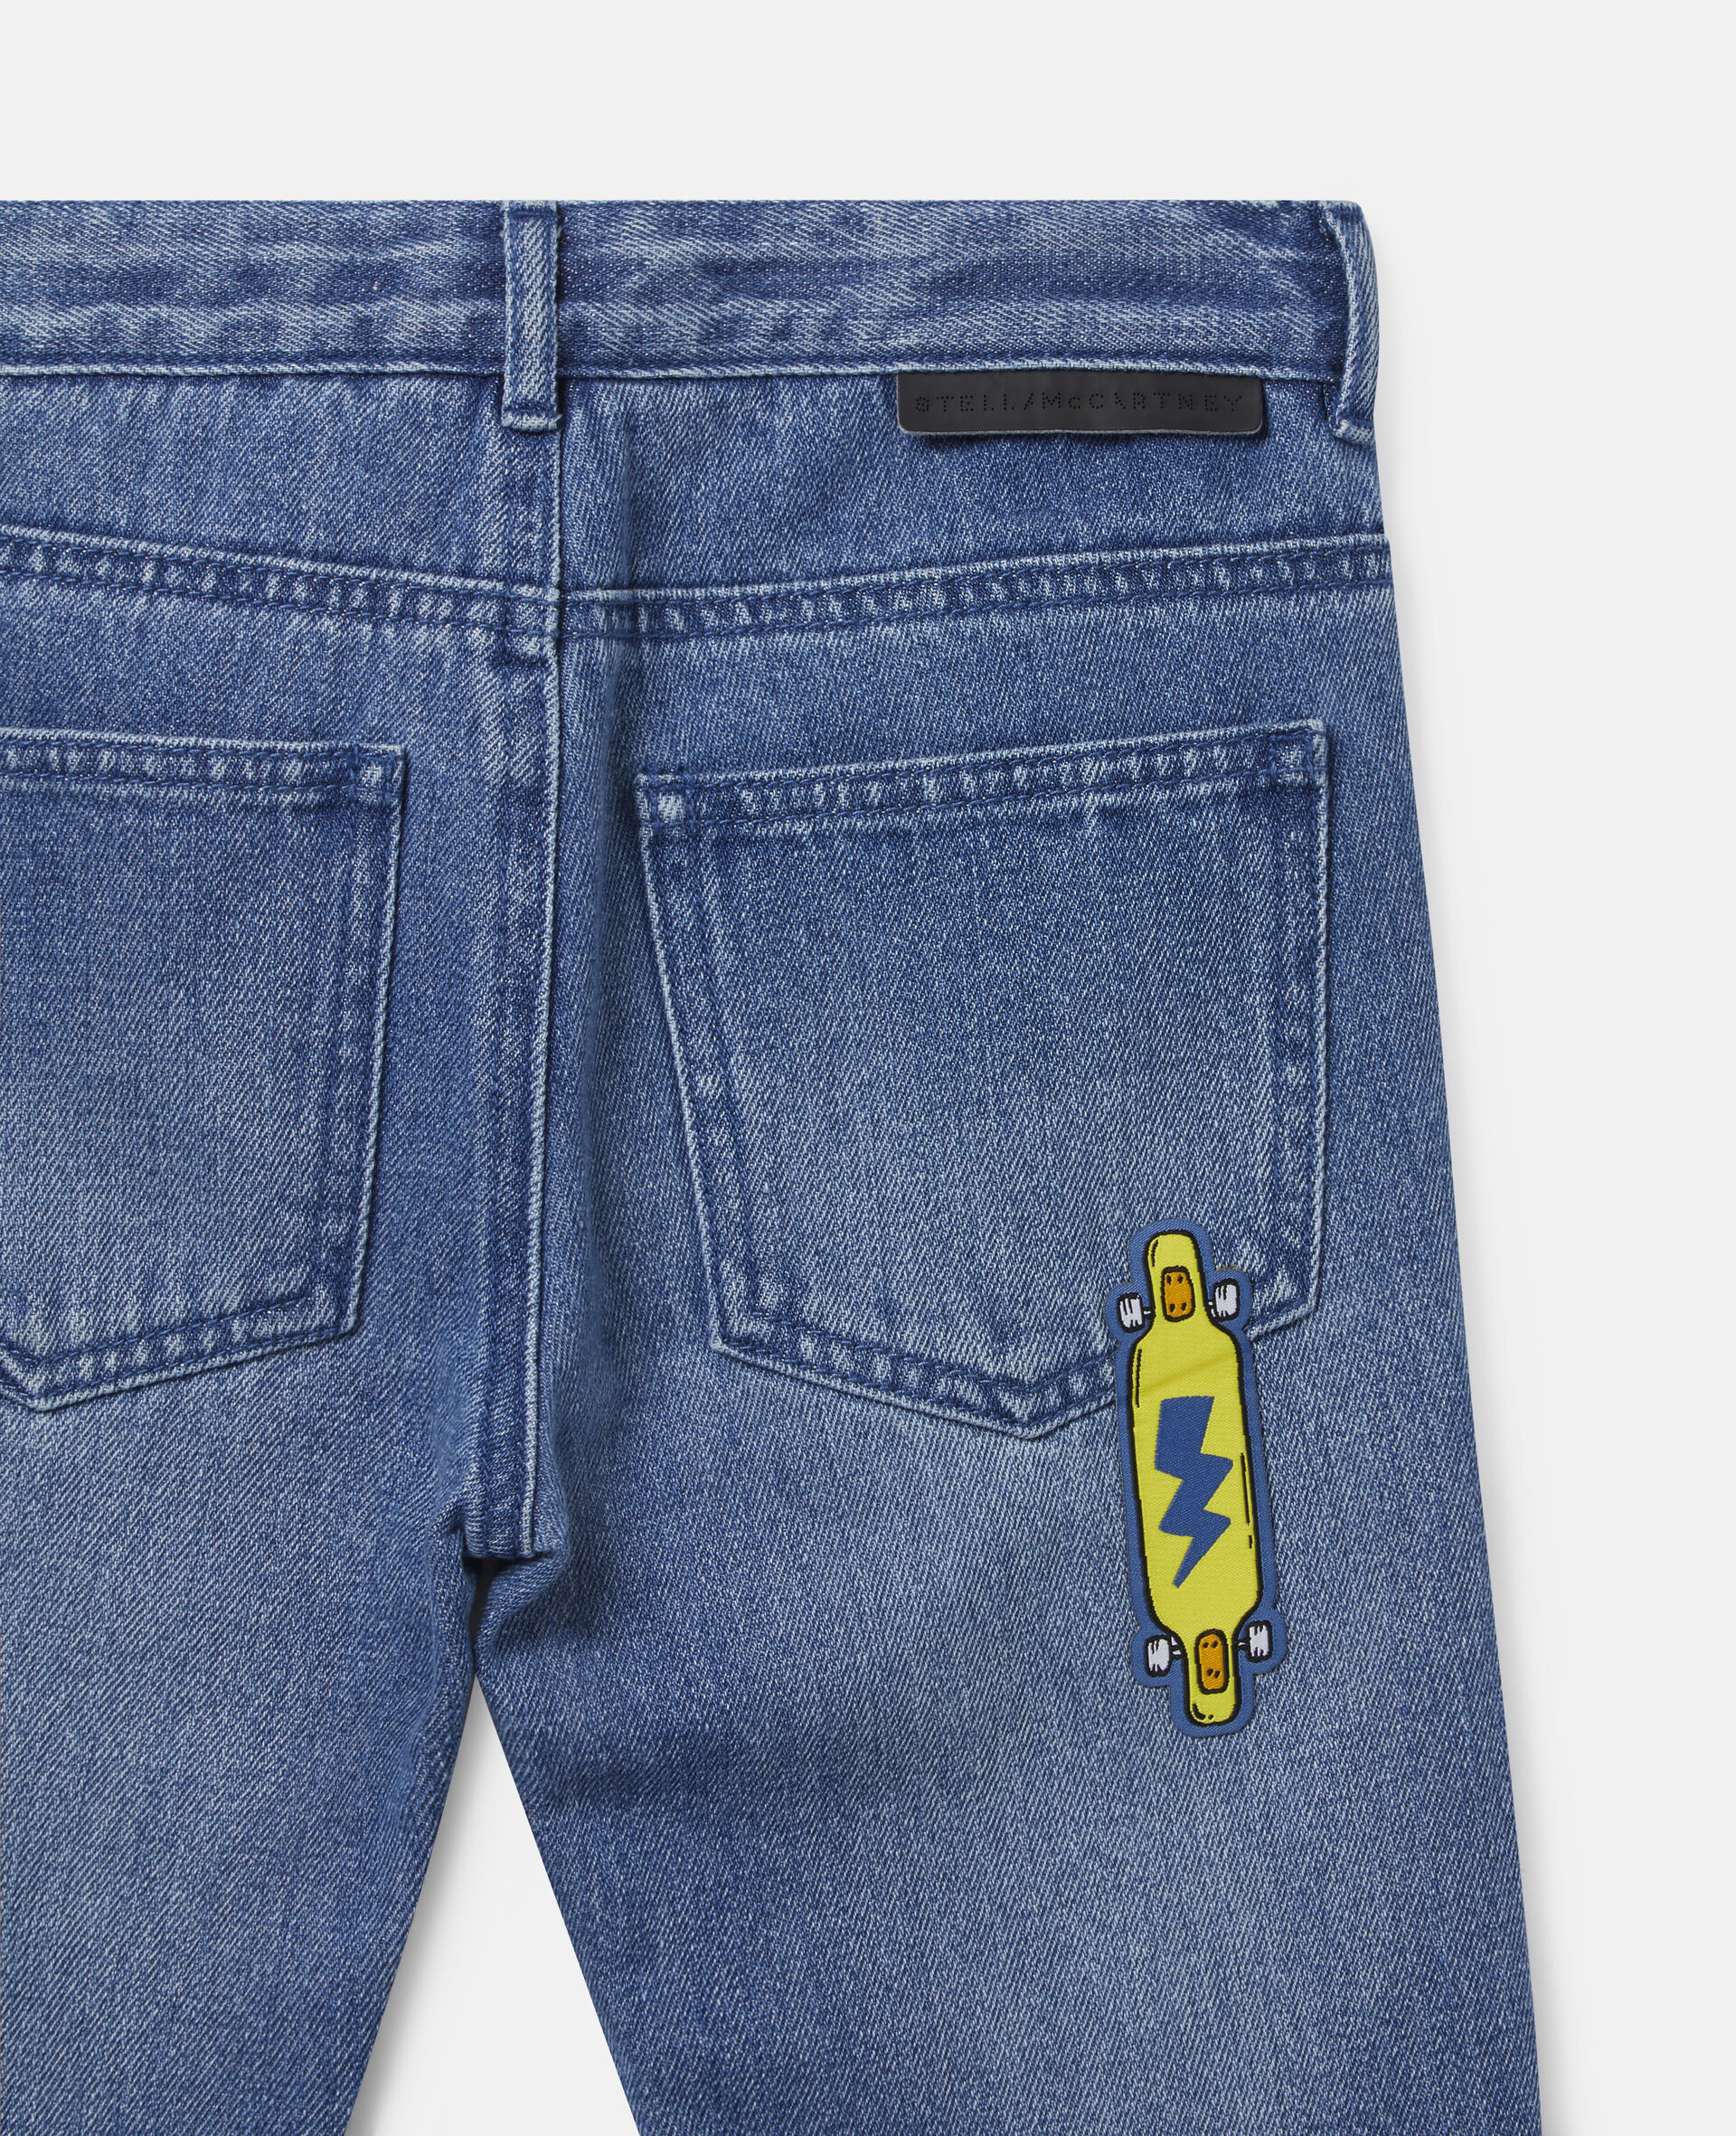 Skater Badges Denim Trousers-Blue-large image number 2